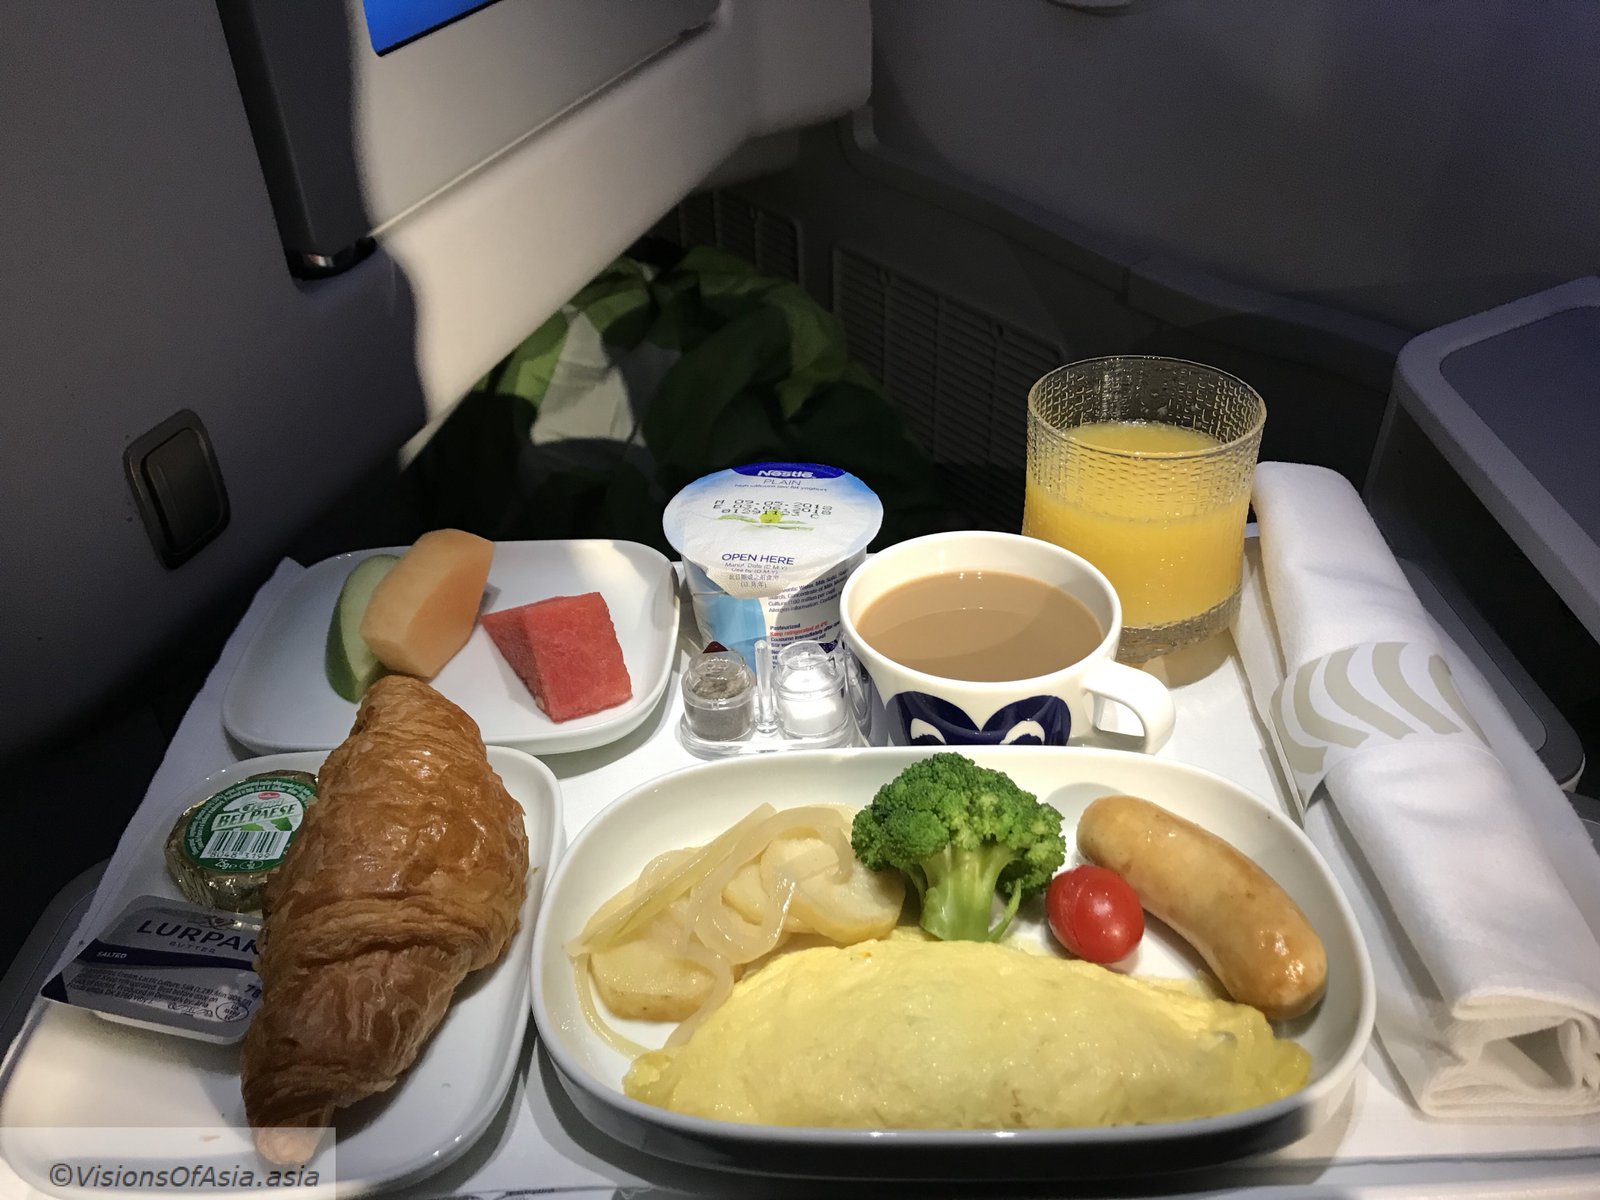 Breakfast on flight AY099